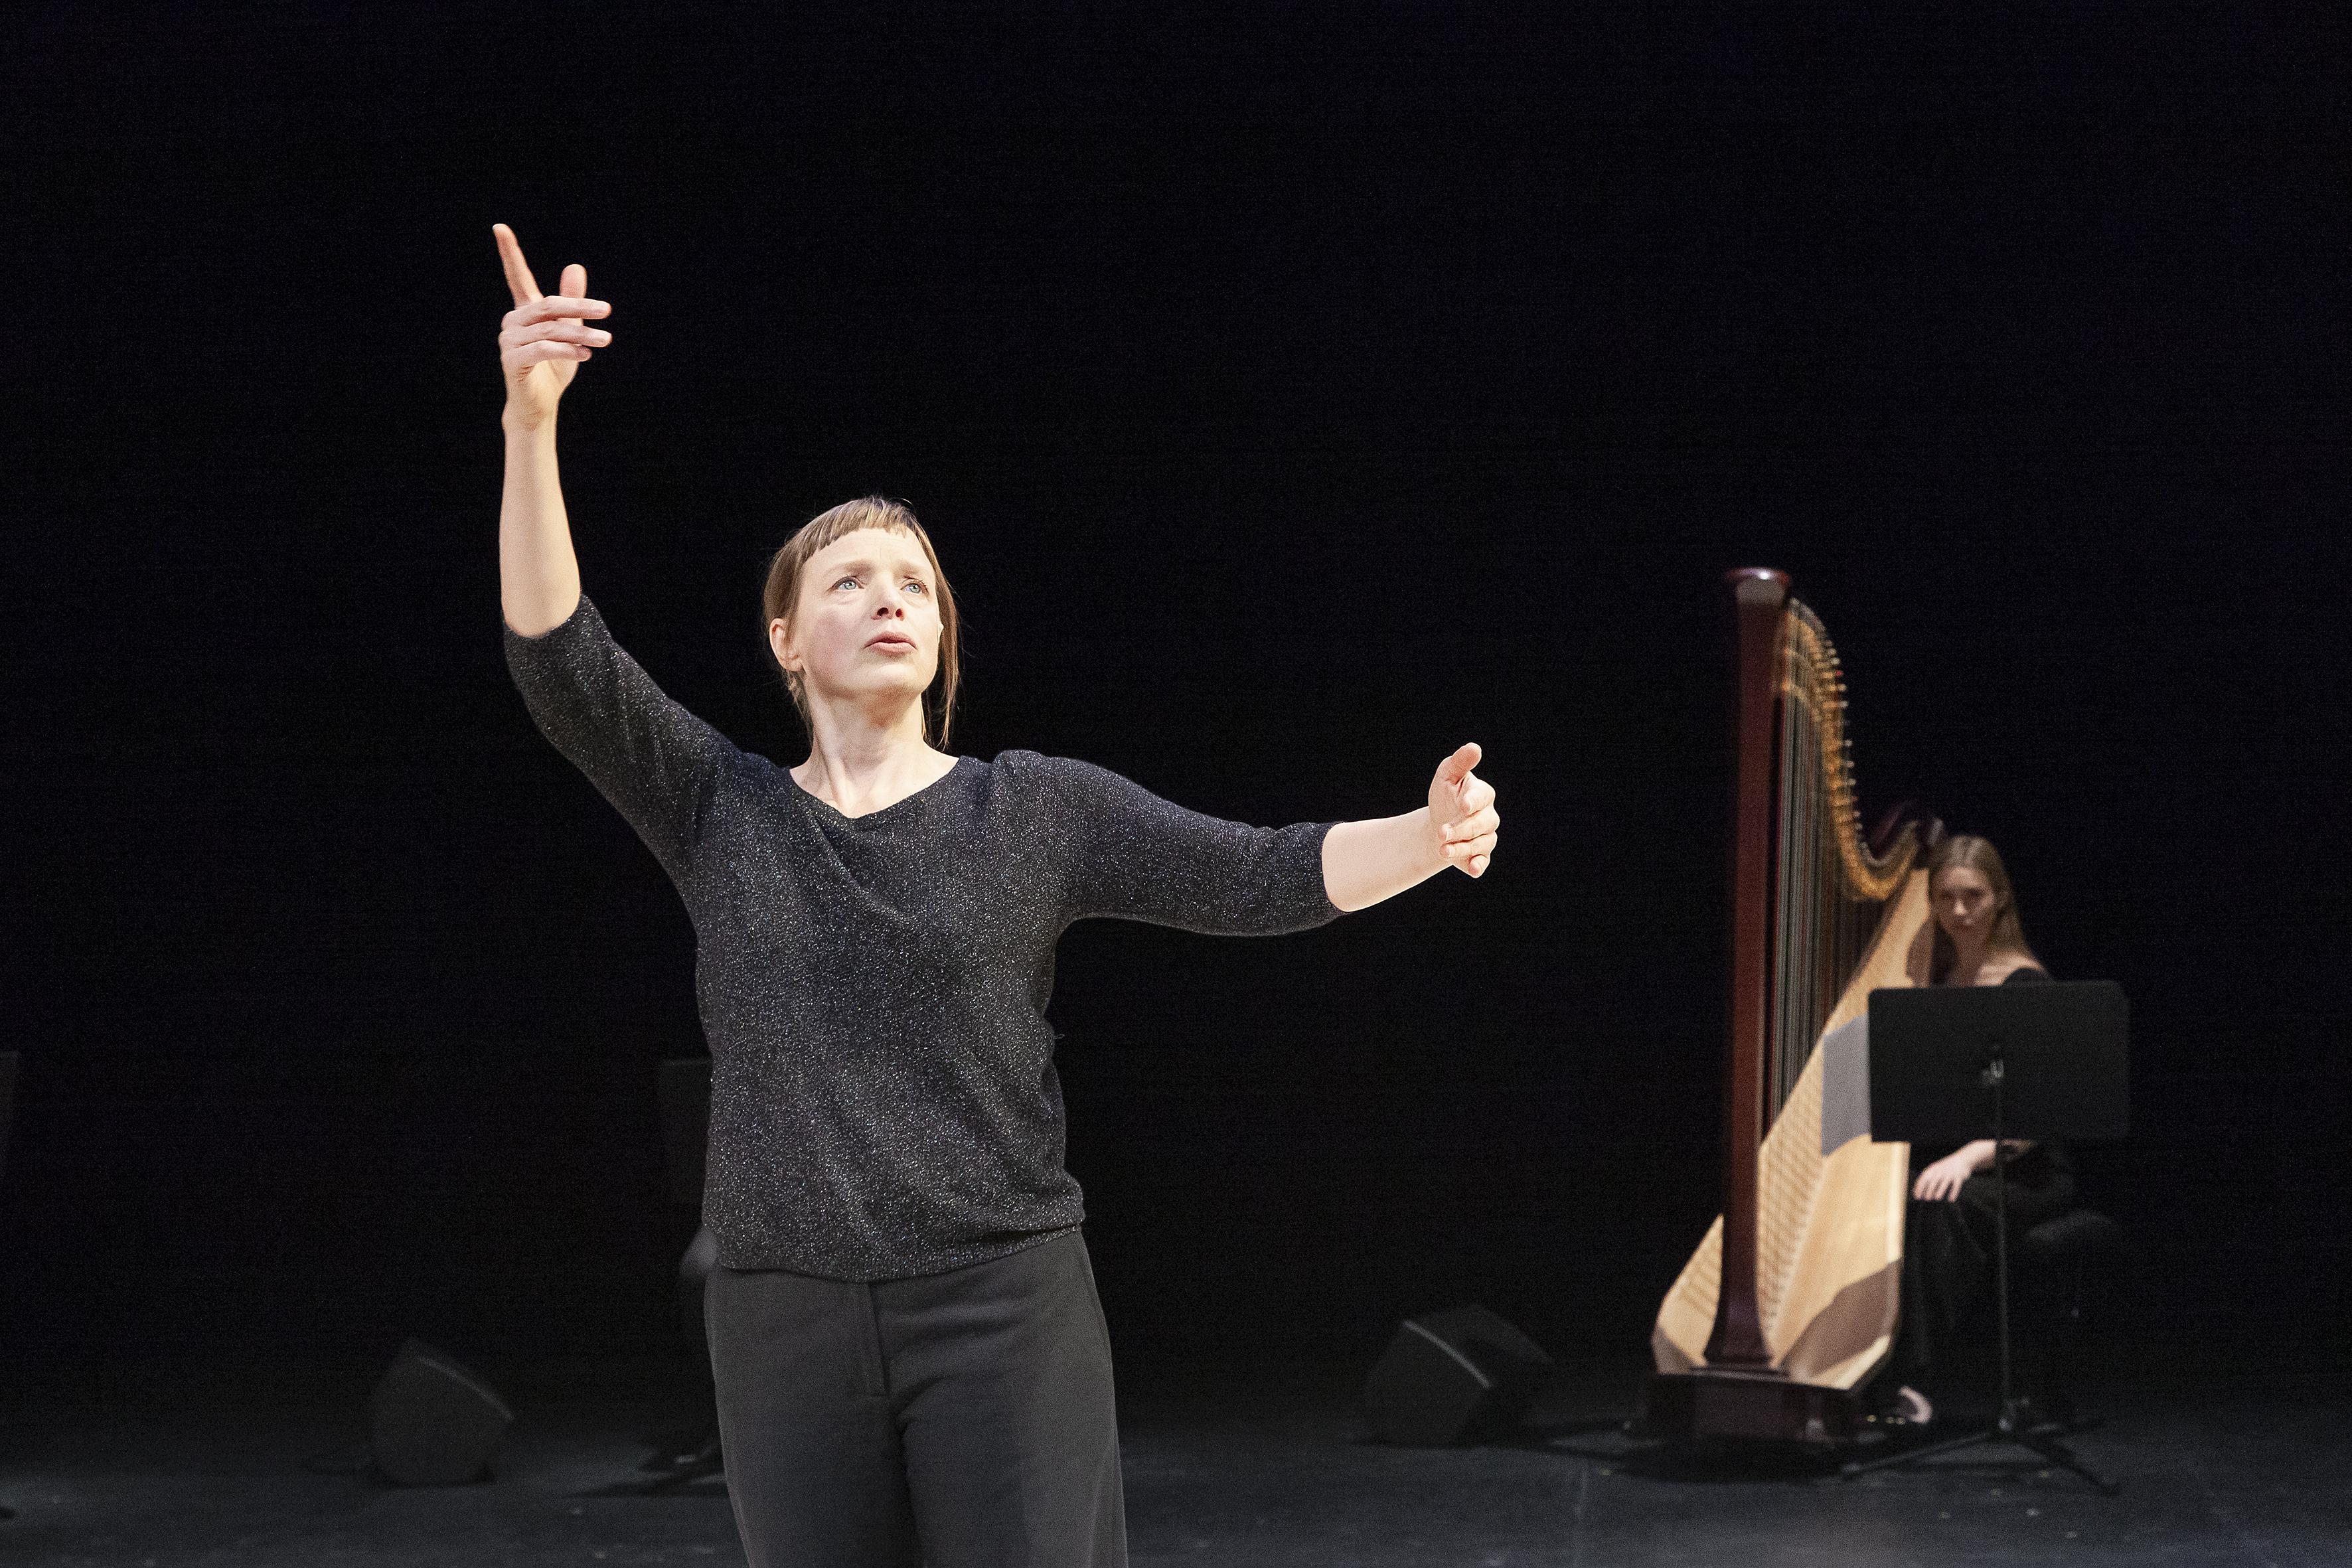 Samantha van Wissen levant les bras, devant une harpiste